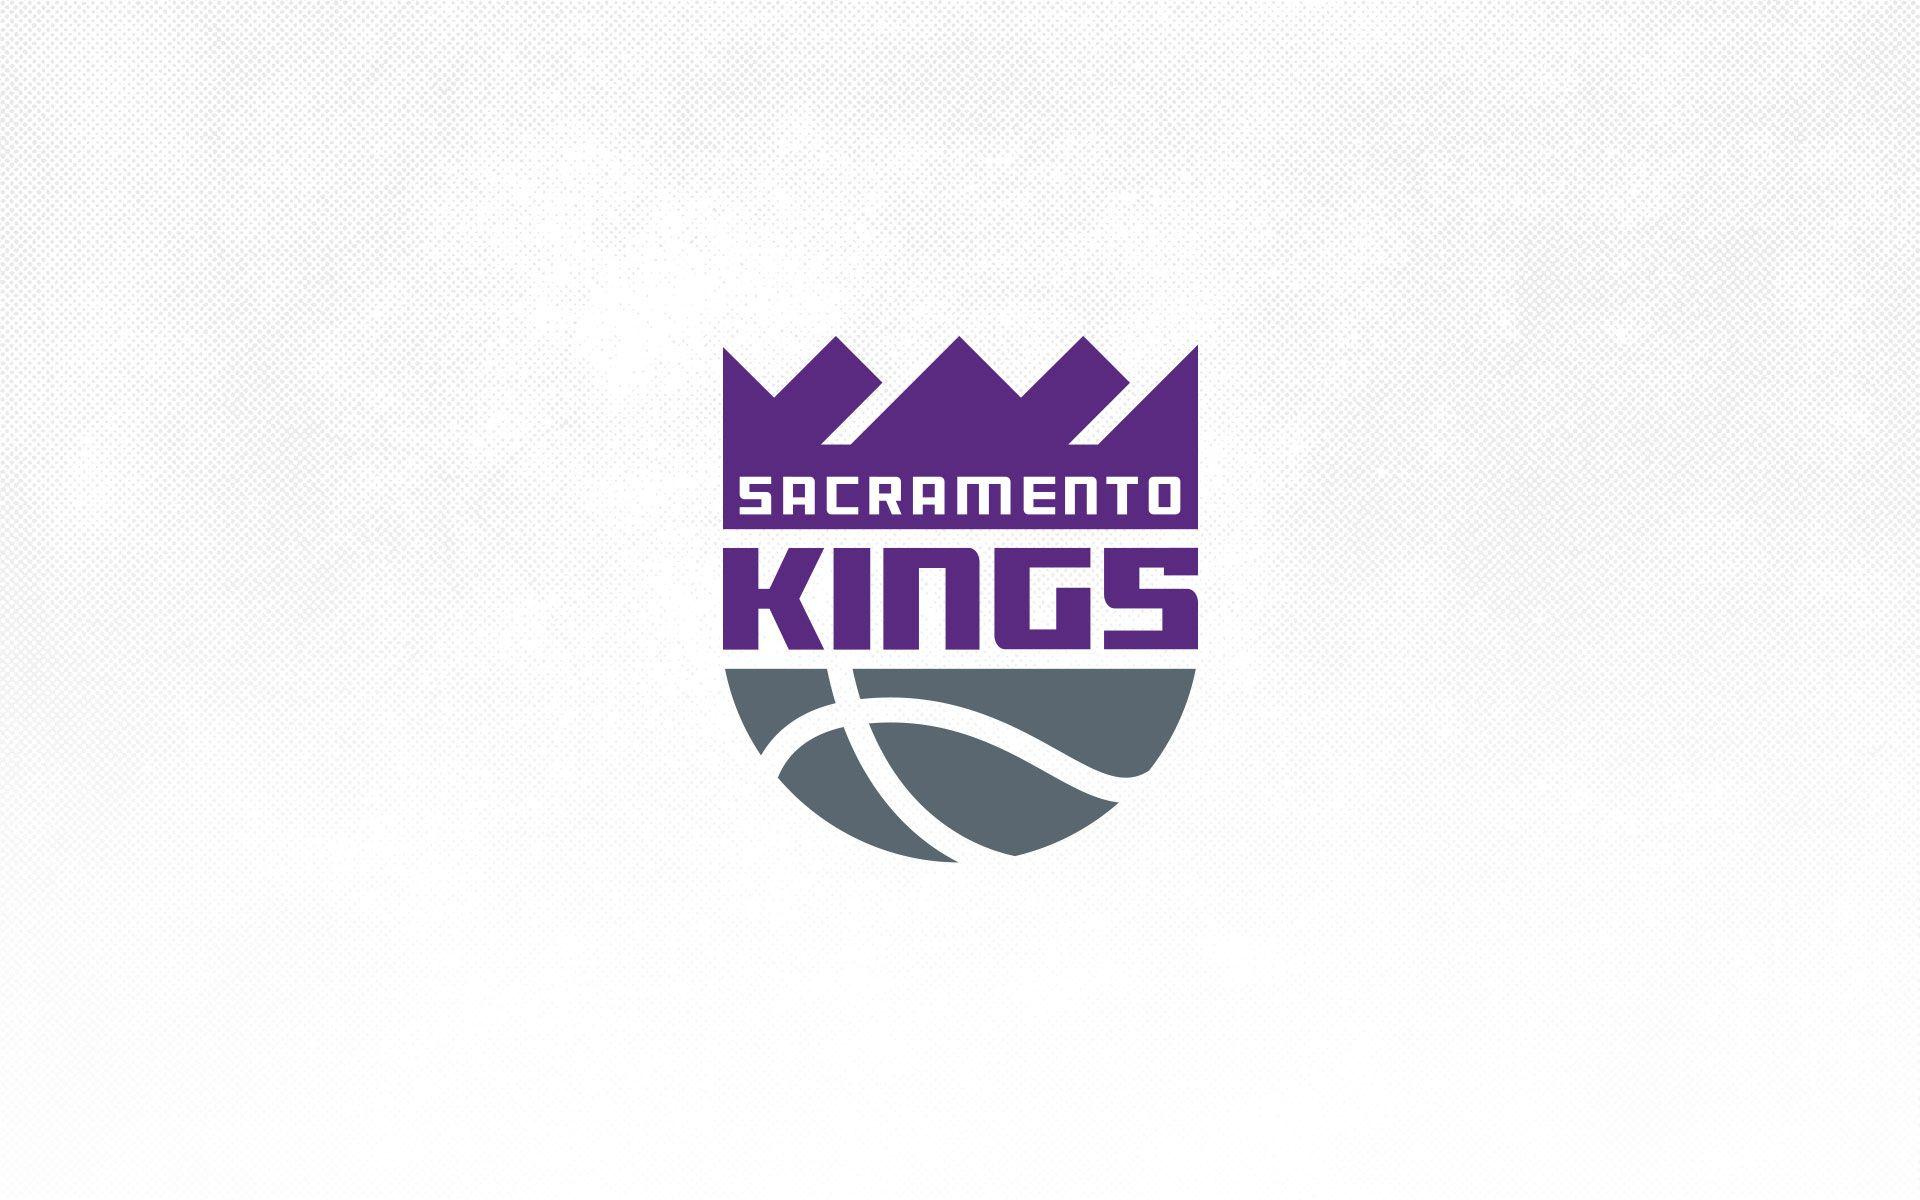 Sacramento Kings  A special  wallpaper for a special day  Facebook